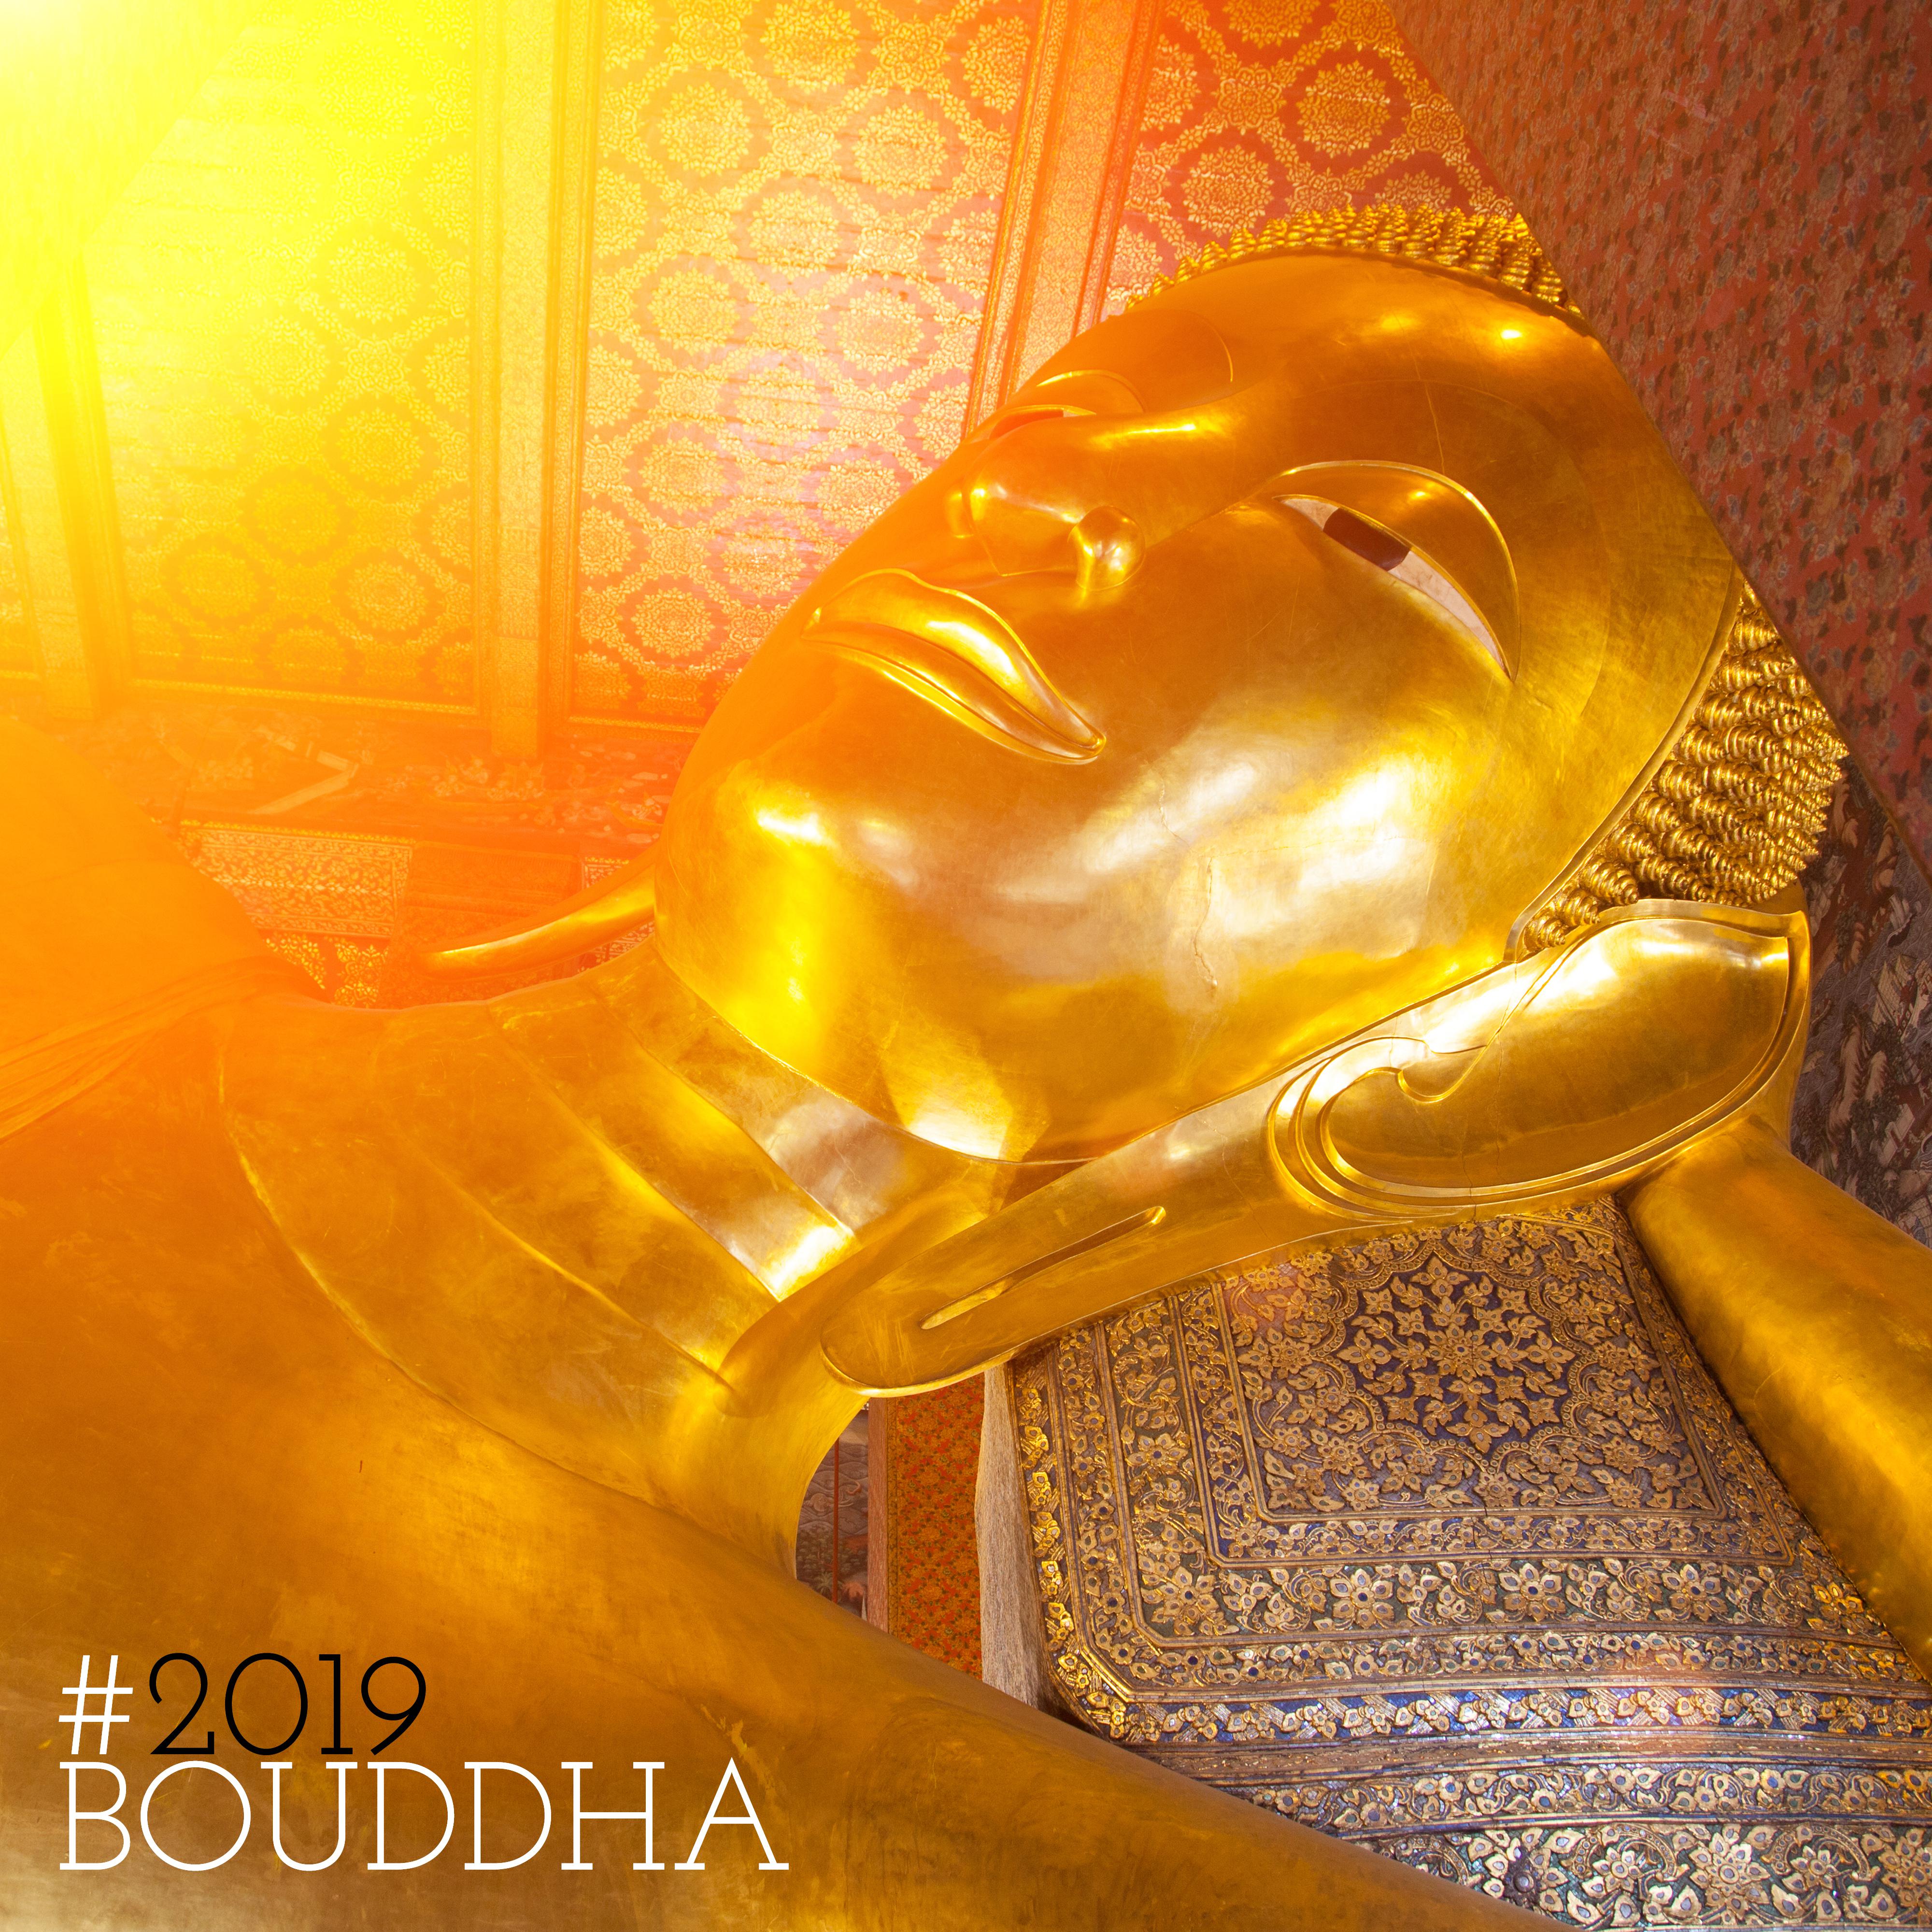 2019 Bouddha  Musique zen, New Age Spa, Yoga, Massage, Zen, Me ditation profonde, Relaxation, Musique de bouddha